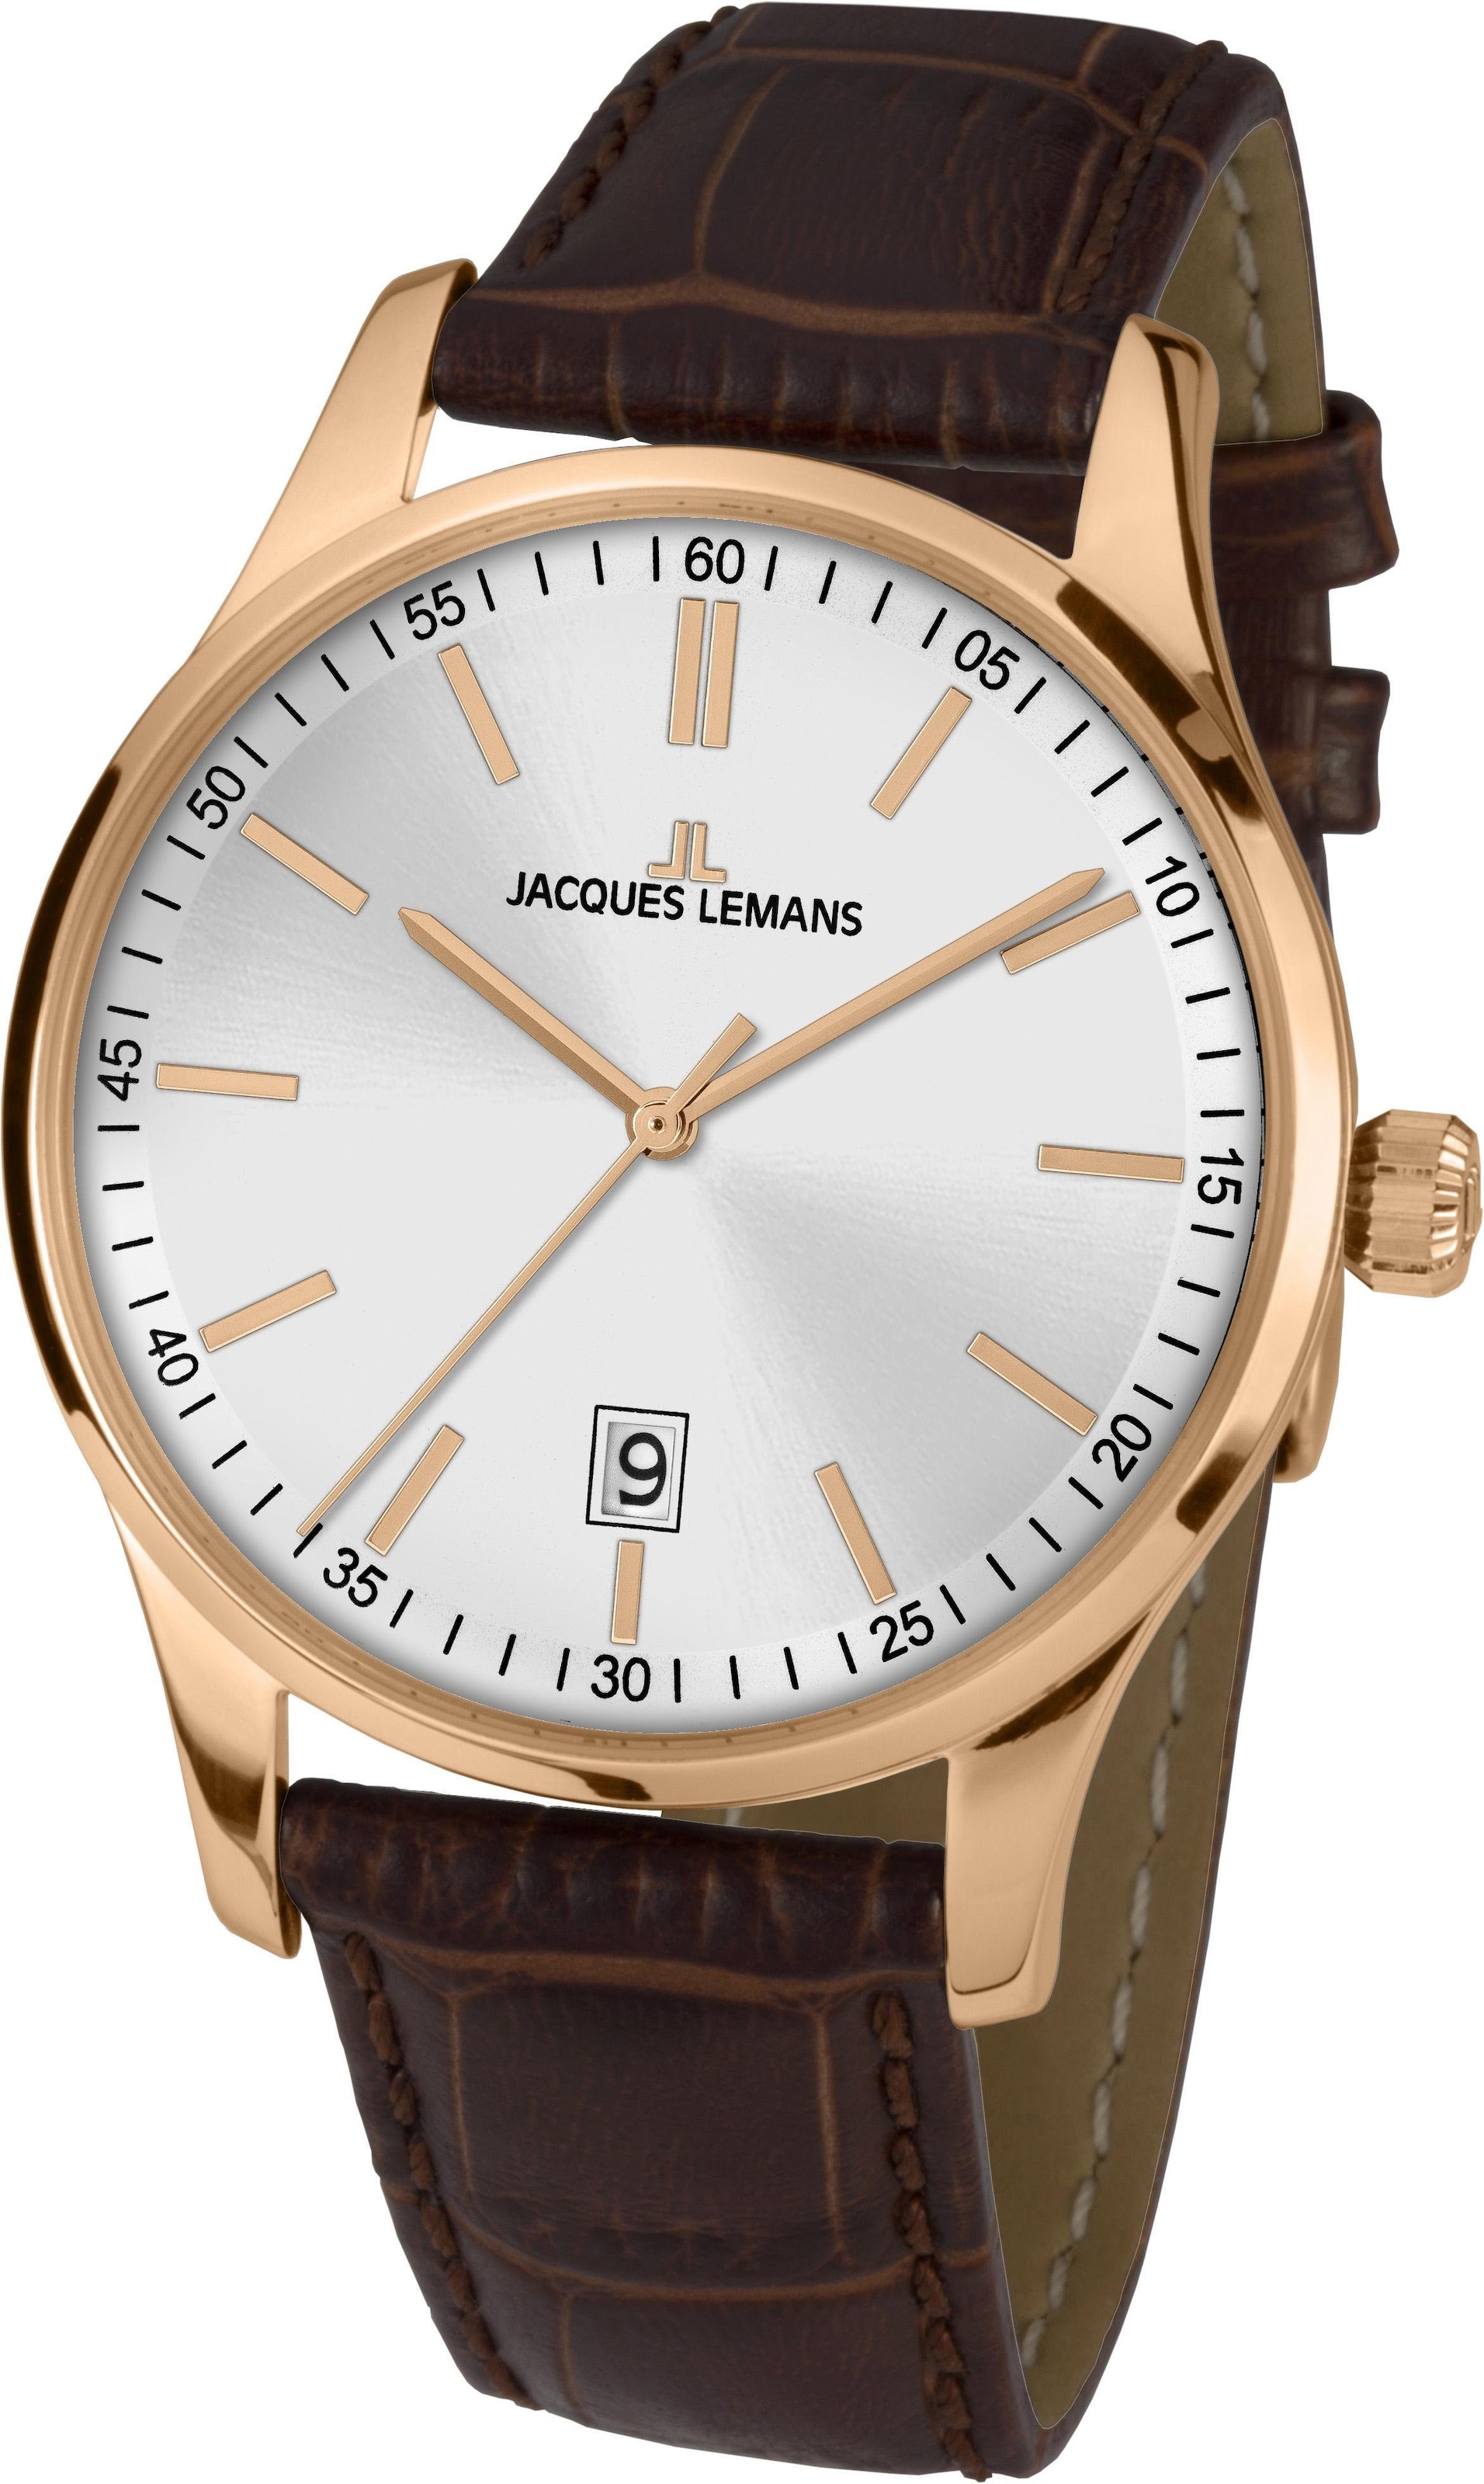 Jacques Lemans Uhren günstig kaufen ▻